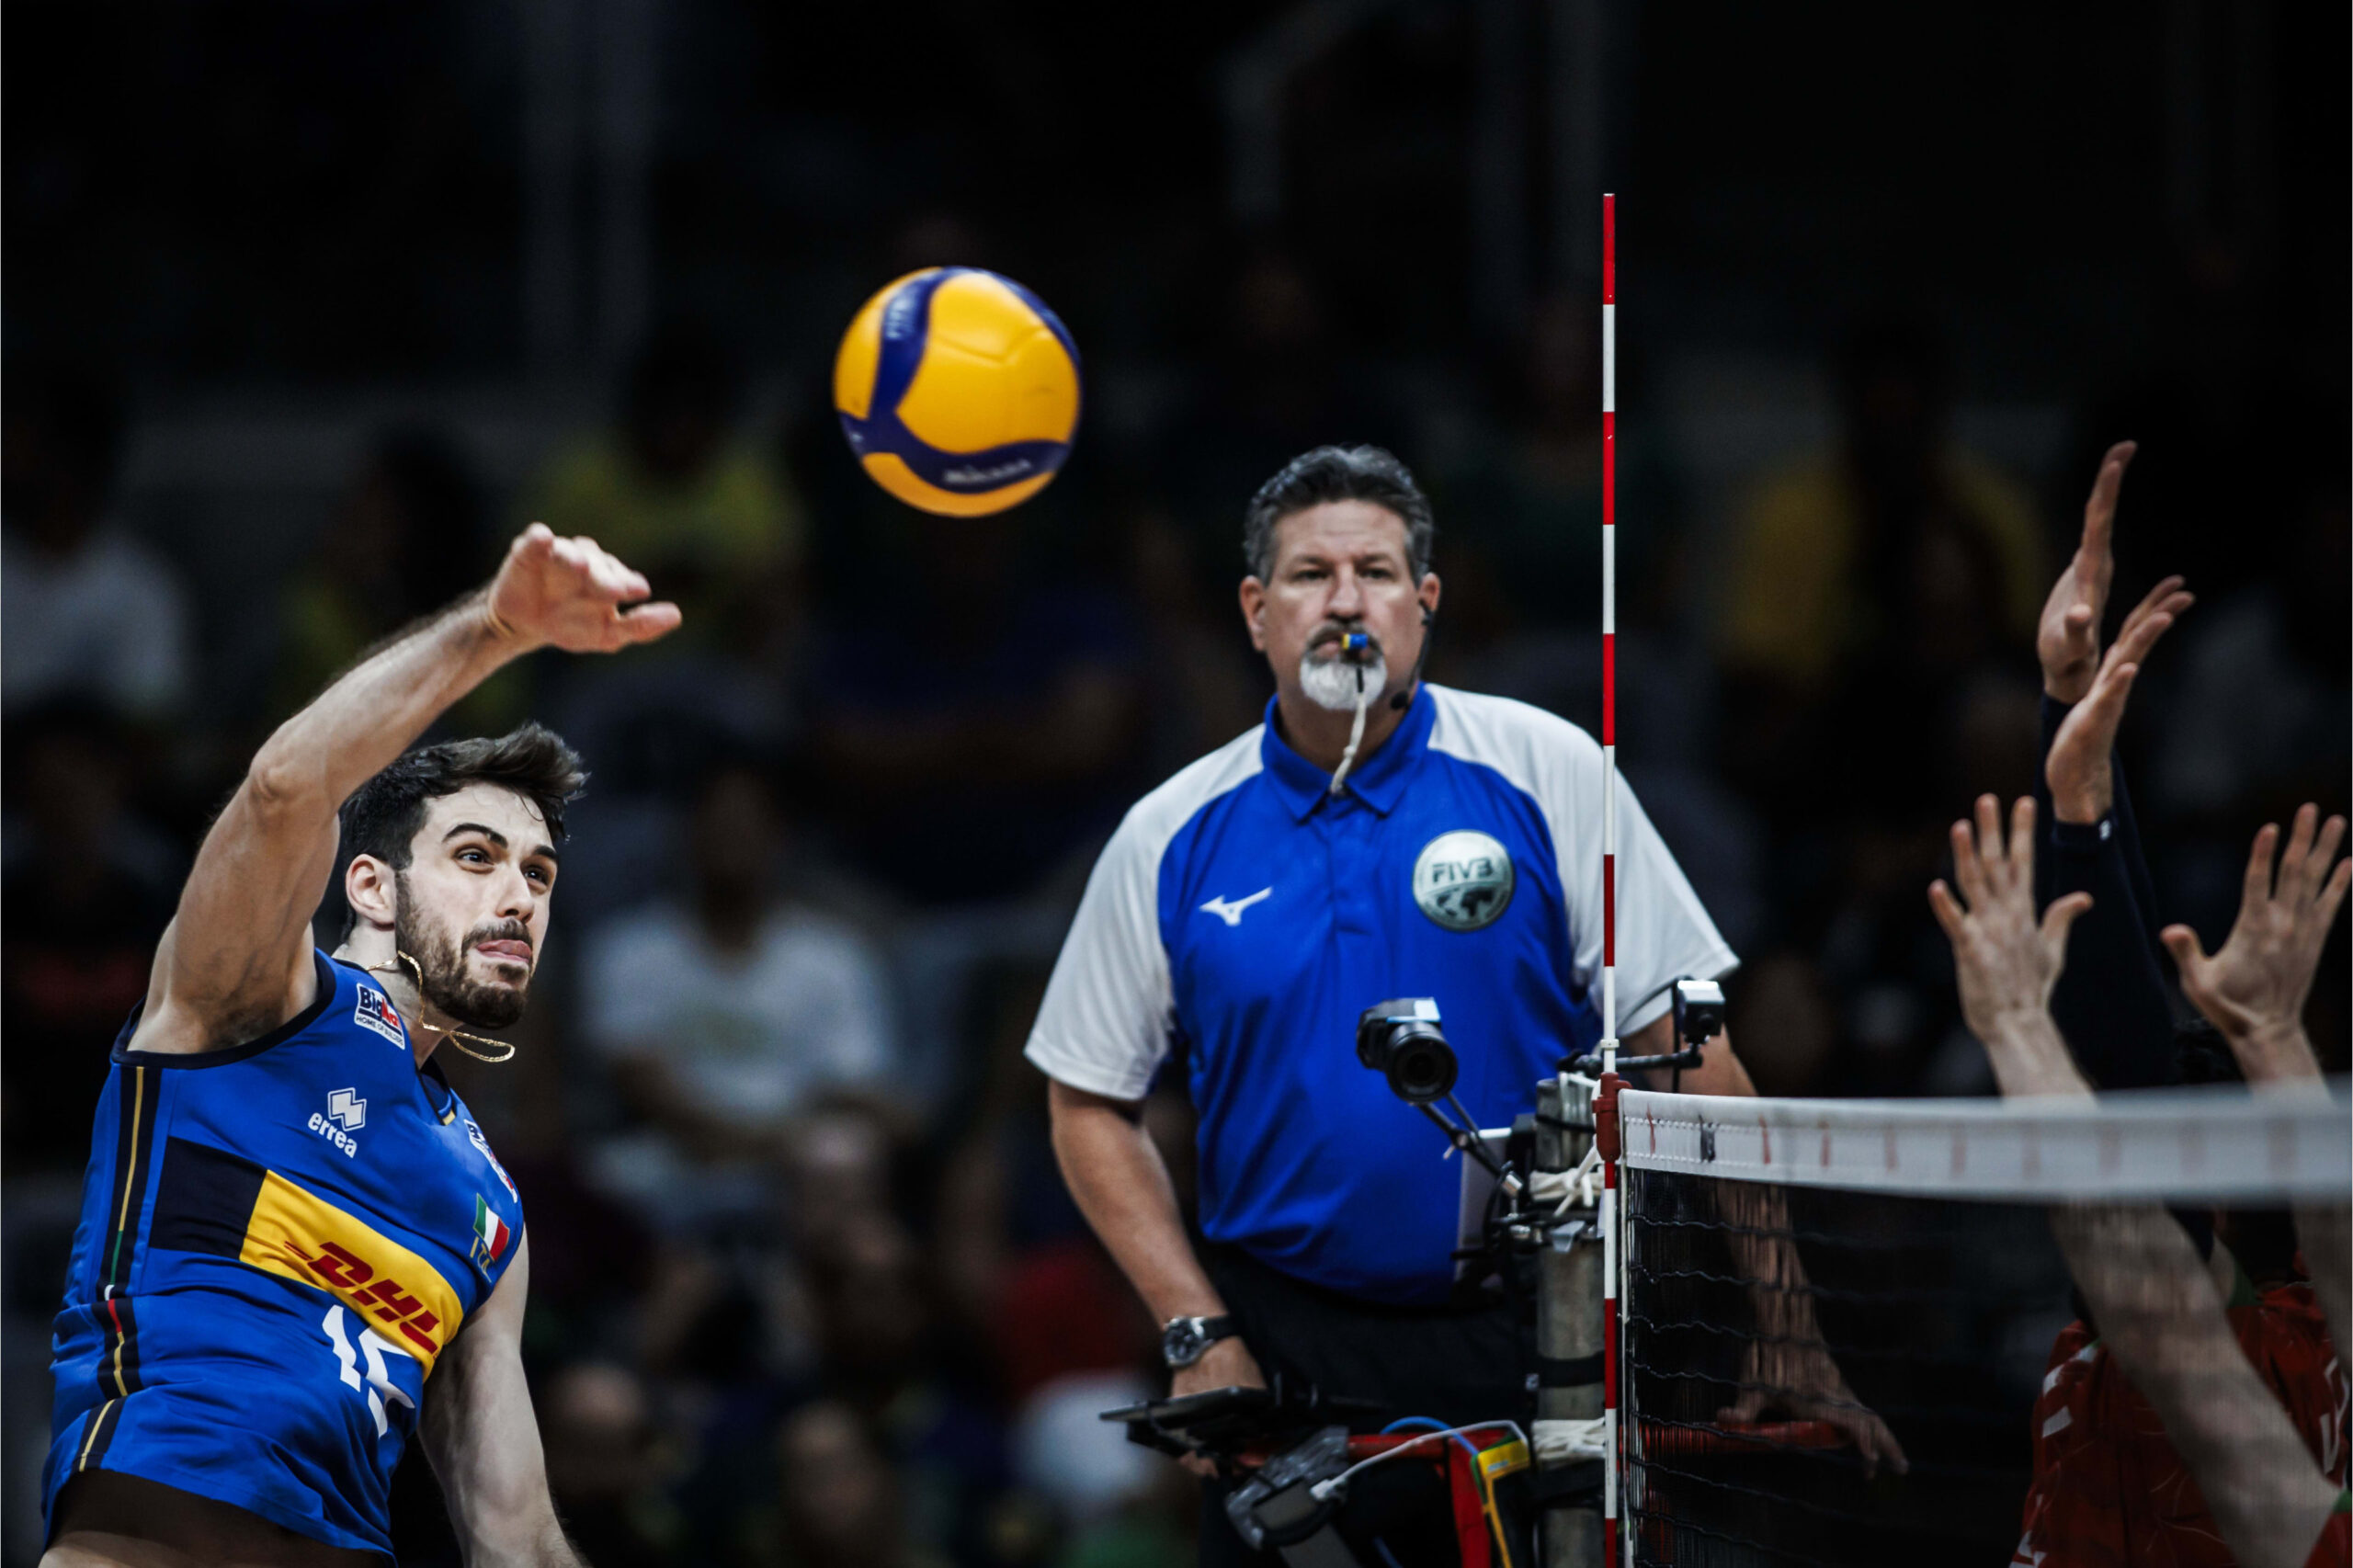 Volley, Brasile e Italia per chiudere in bellezza la prima settimana di VNL